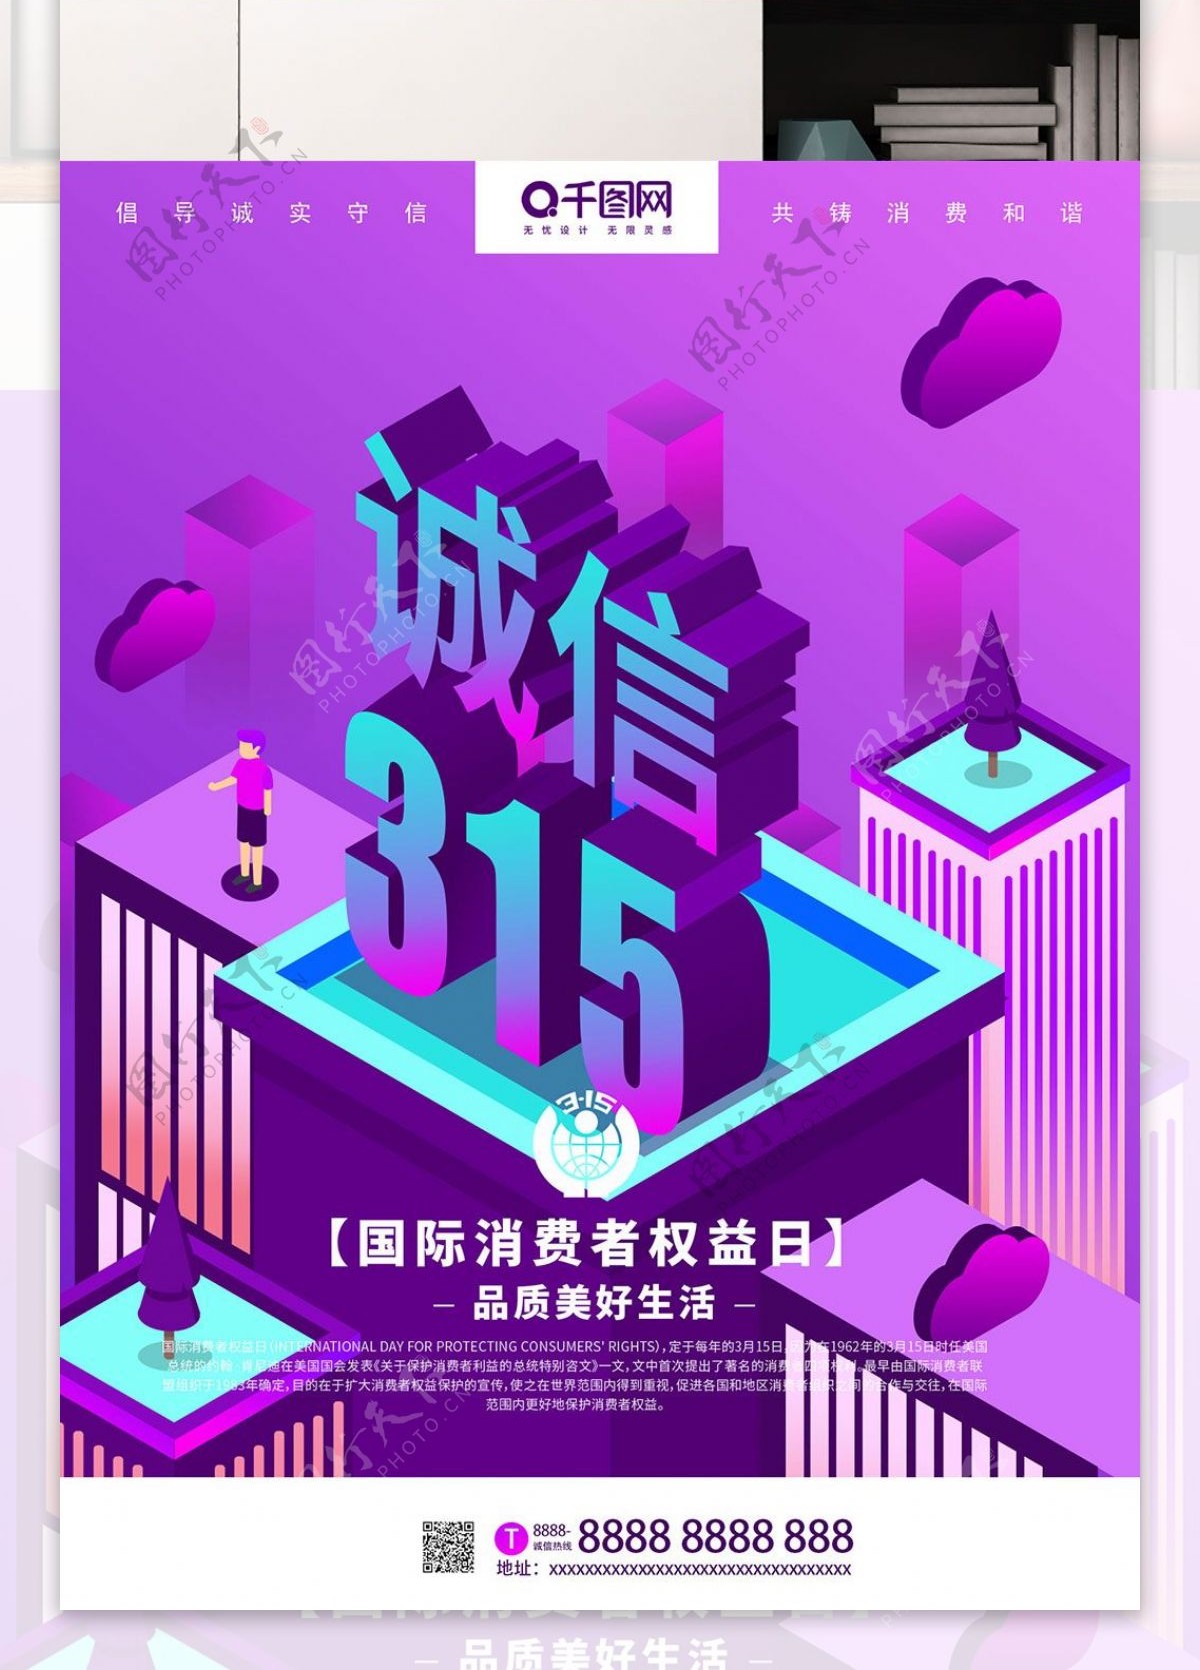 紫色315消费者权益日2.5D主题海报